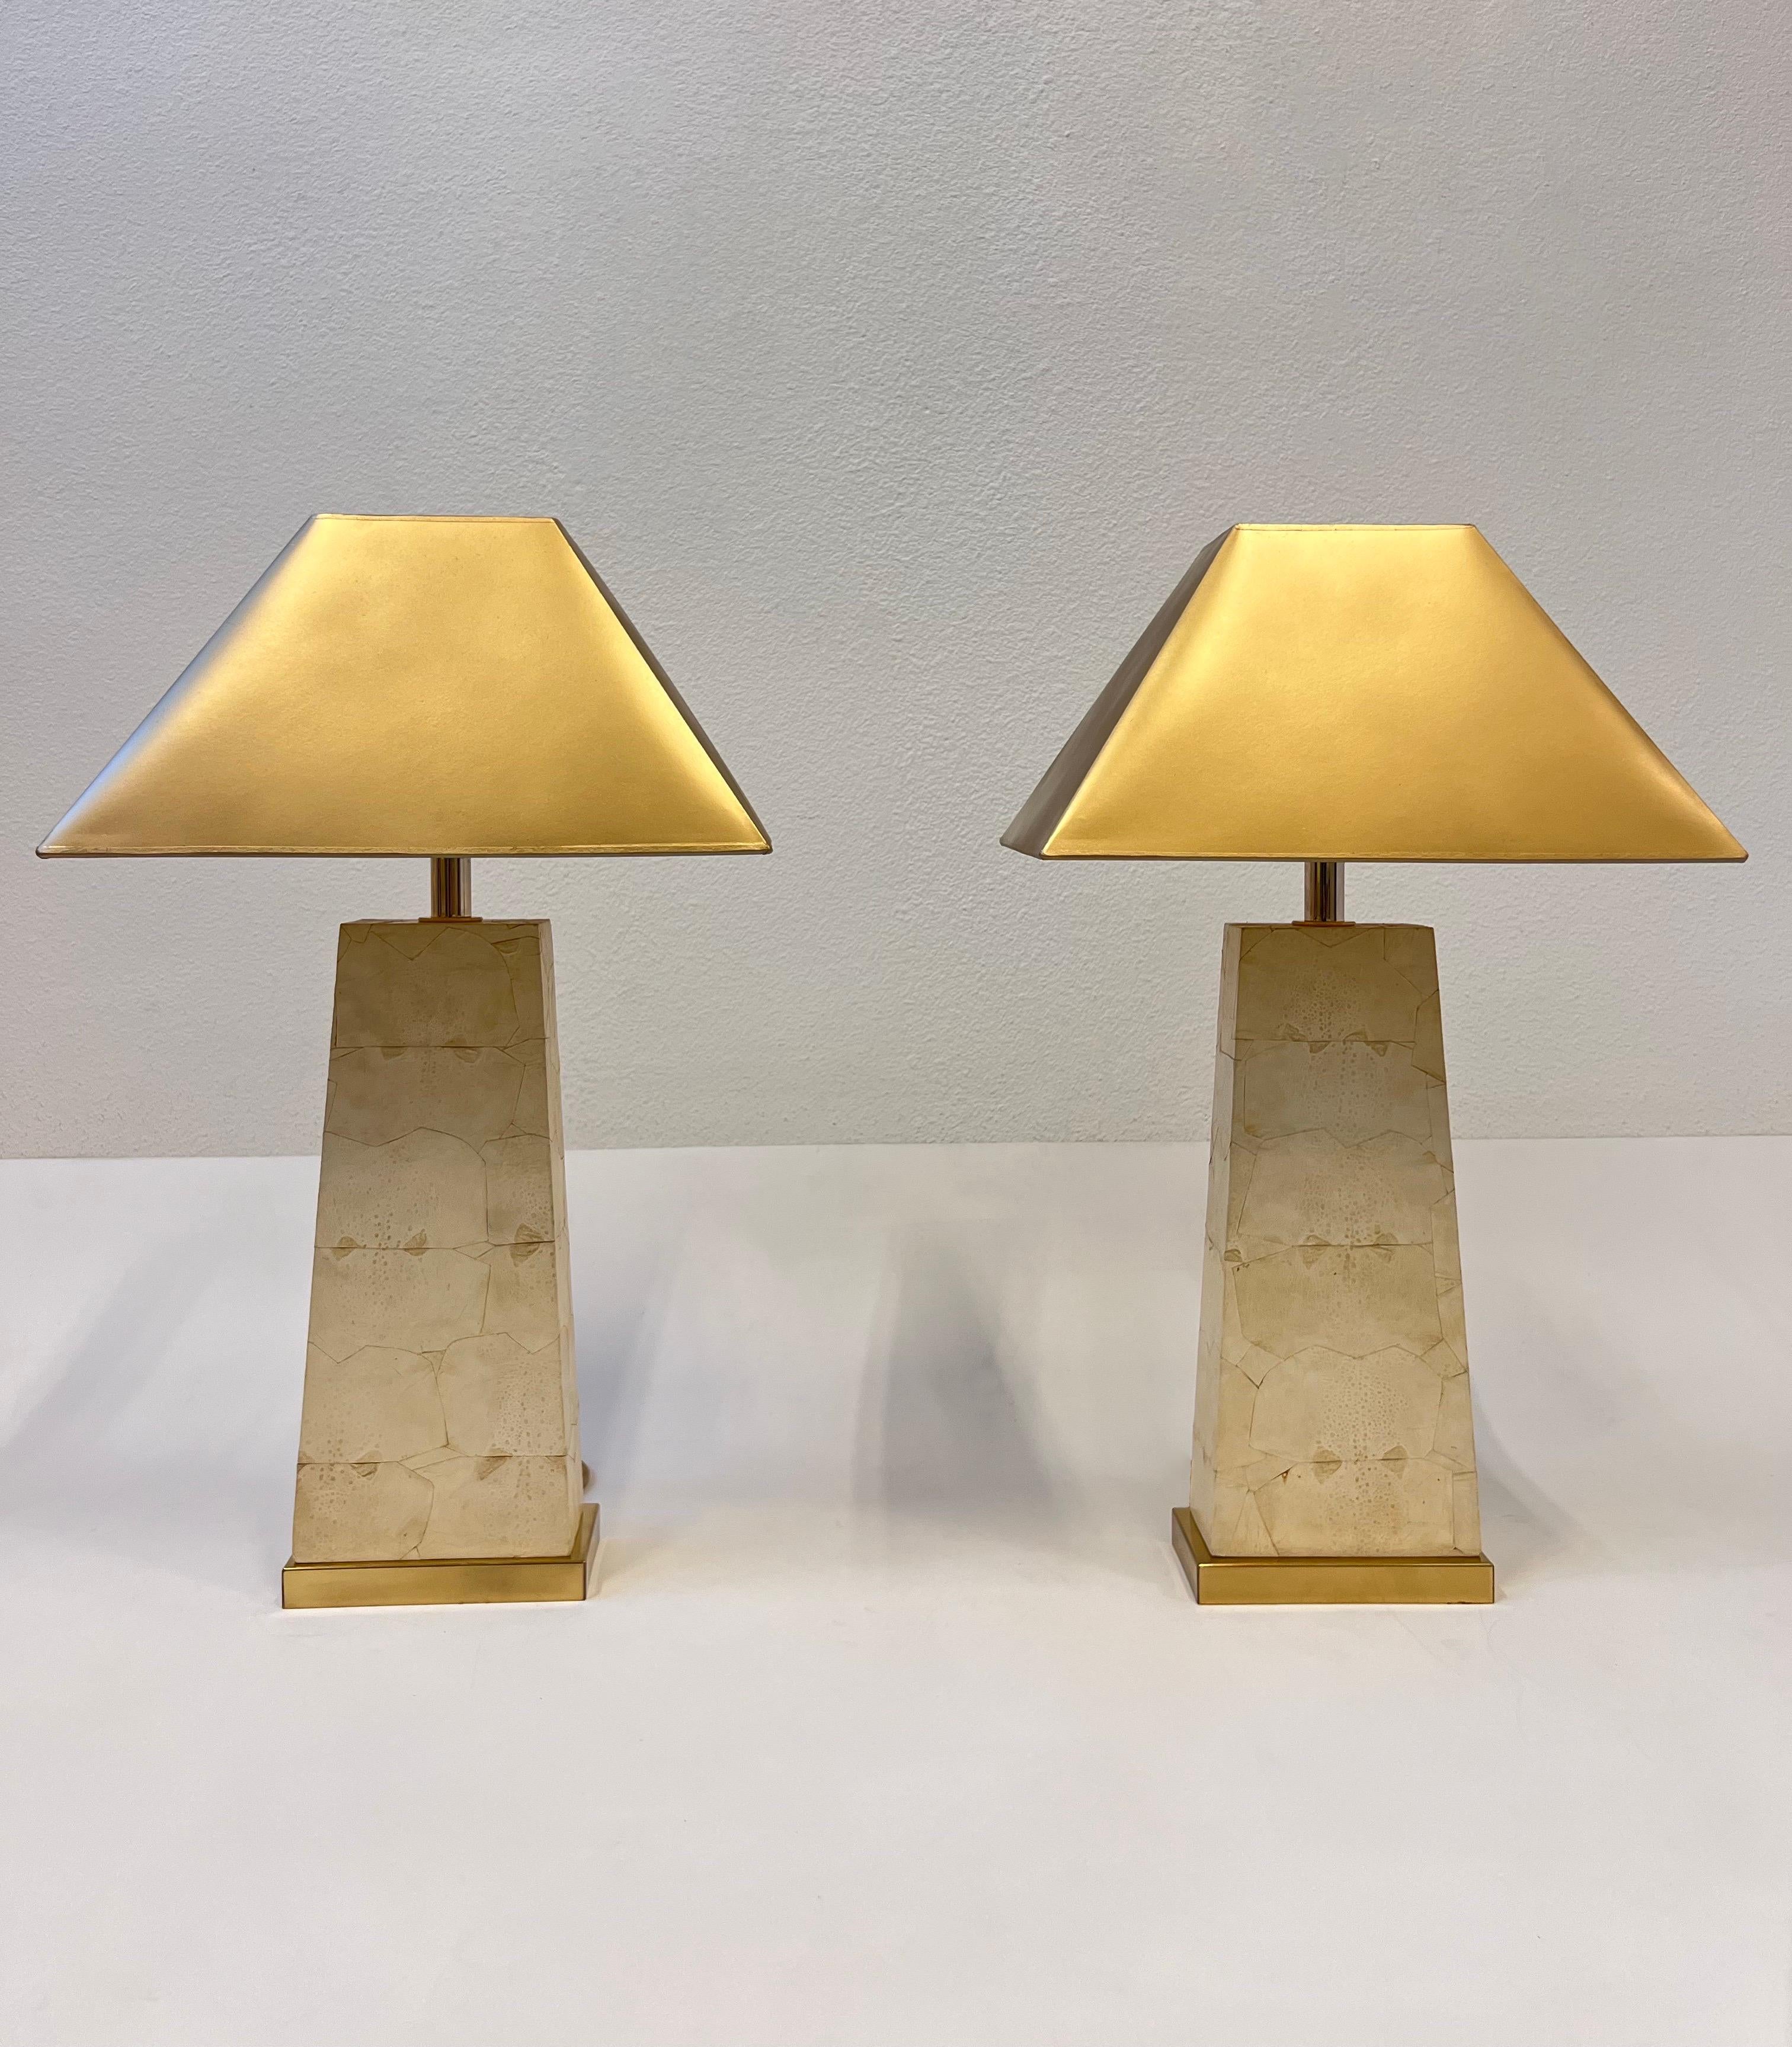 1980er Jahre Glamouröses Paar Krötenleder-Patchwork und polierte Messing-Tischlampen in der Art von Karl Springer. 

Gefertigt aus Holz mit Krötenlederbezug, polierten Messingbeschlägen und goldenen Schirmen. 
Sie weisen geringe altersbedingte